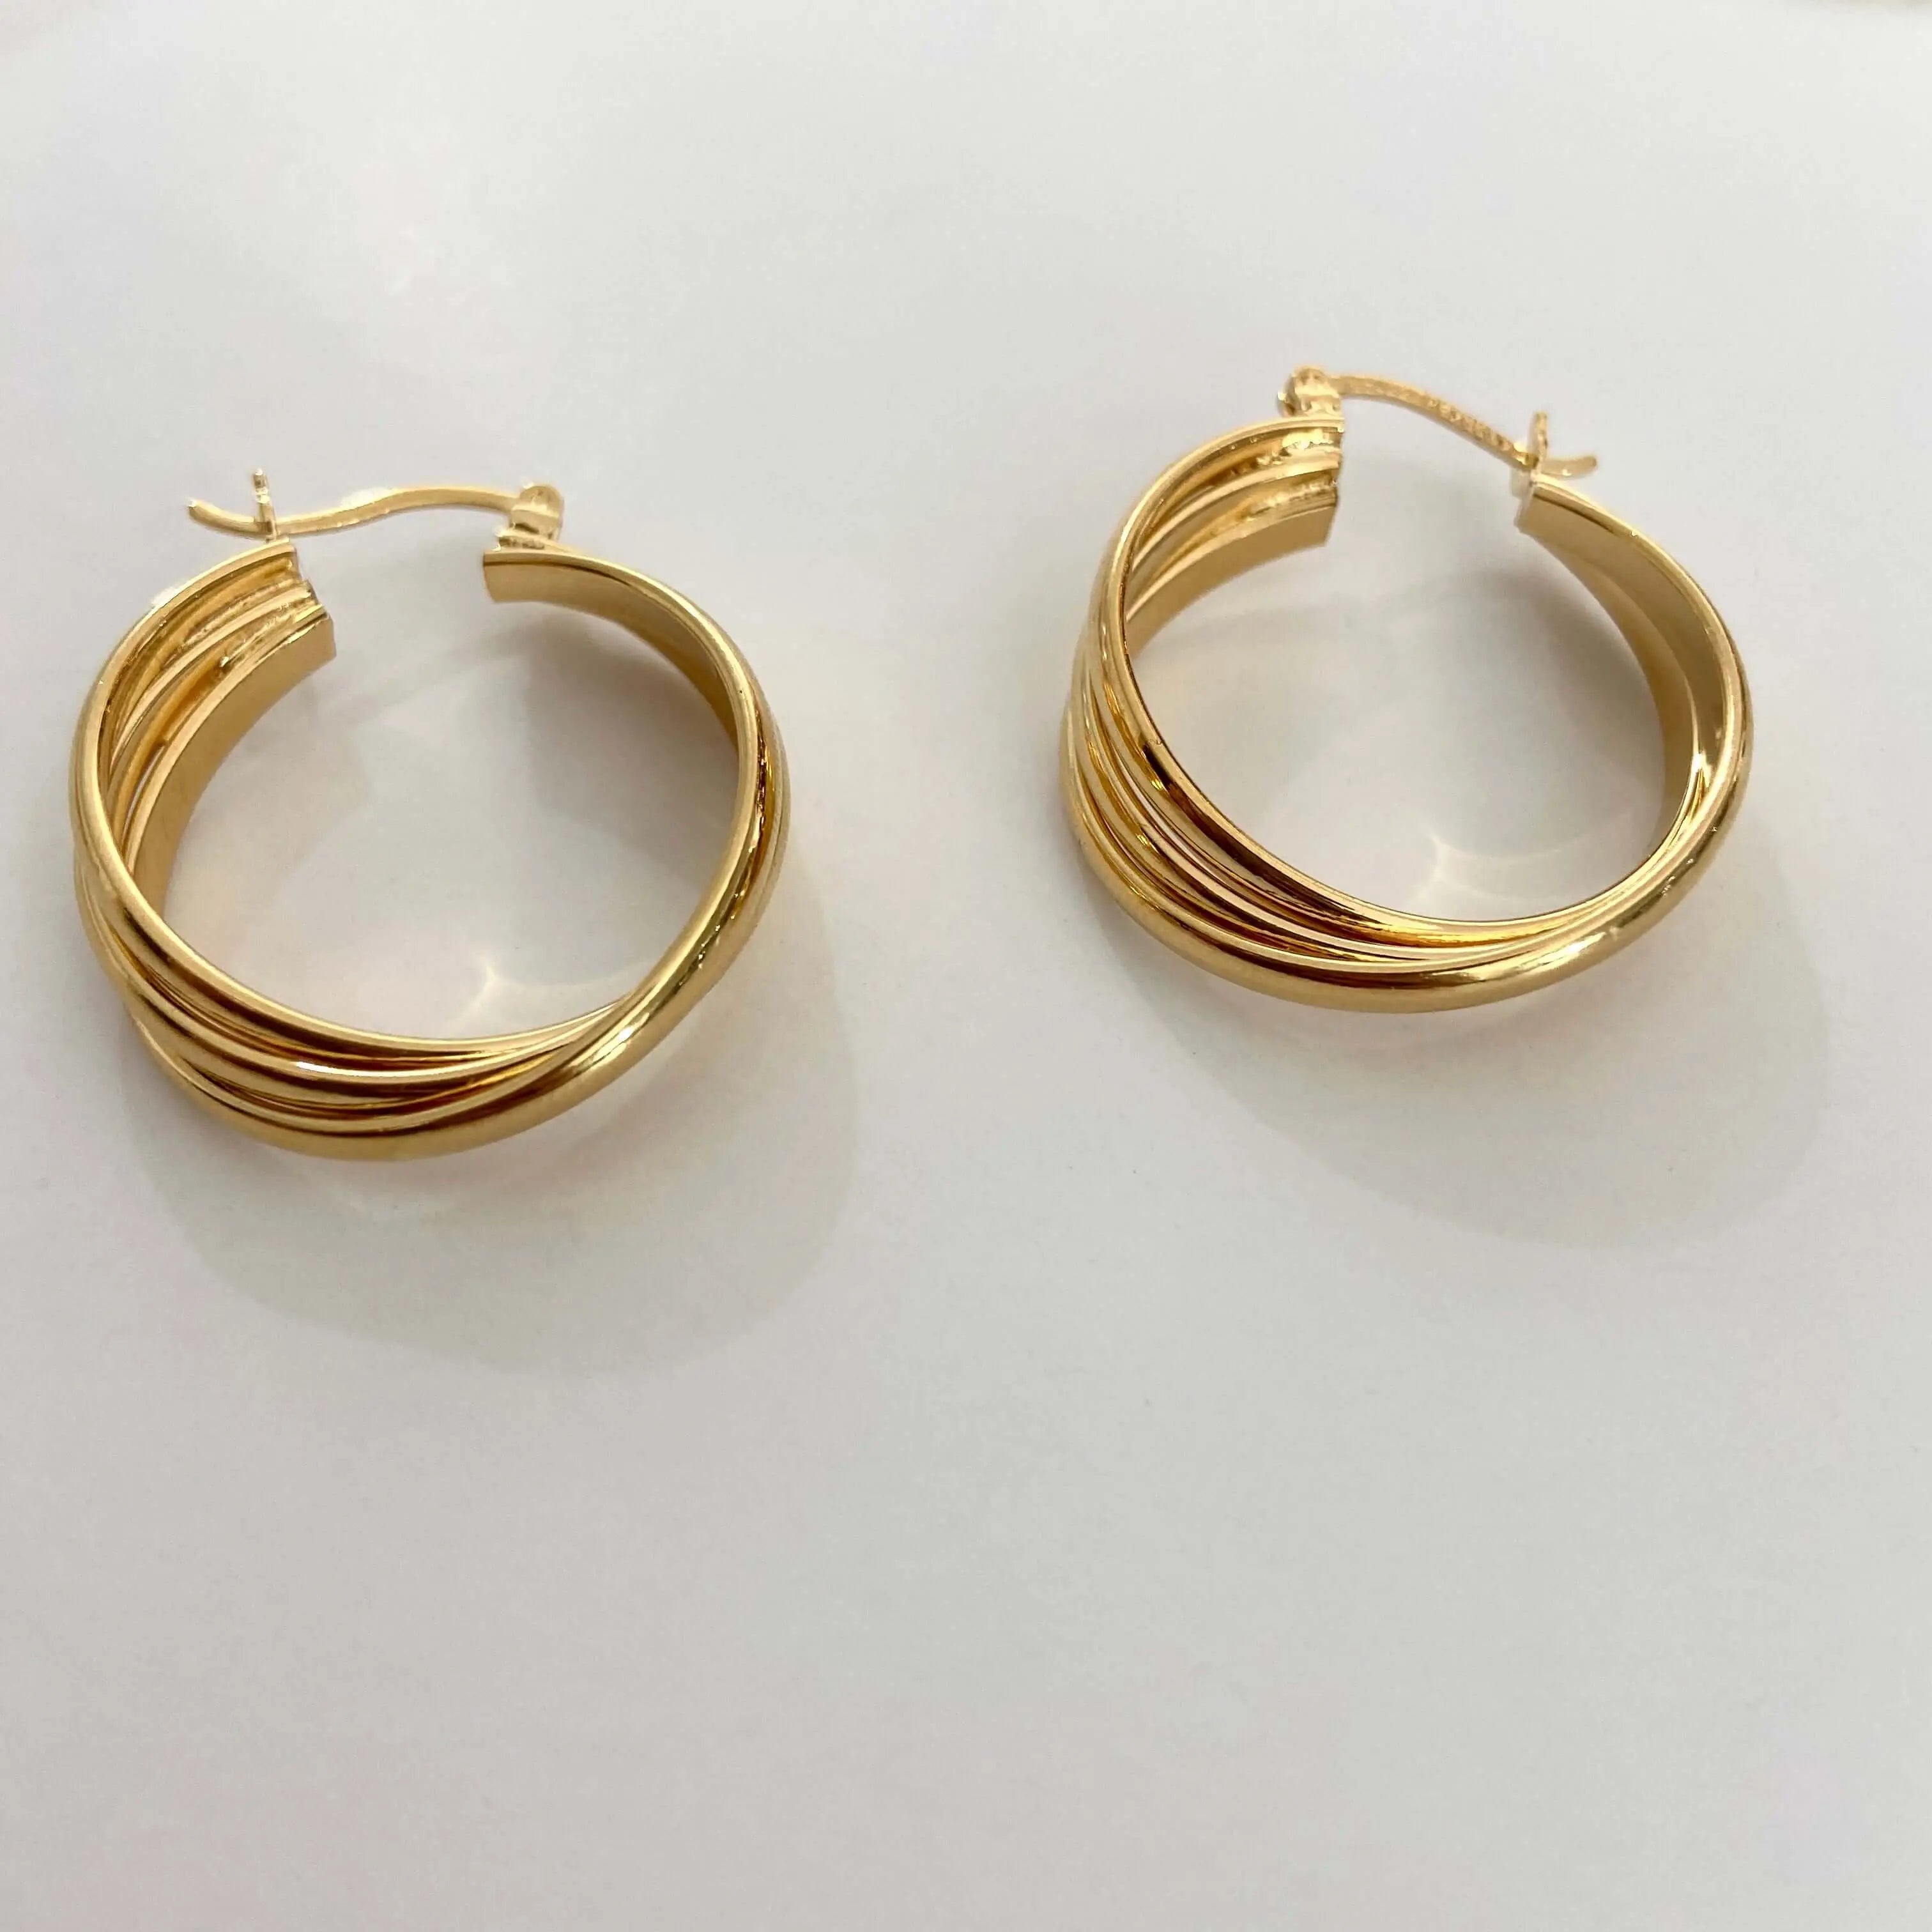 Arracadas Jumbo Aretes Gold  Muun Jewelry